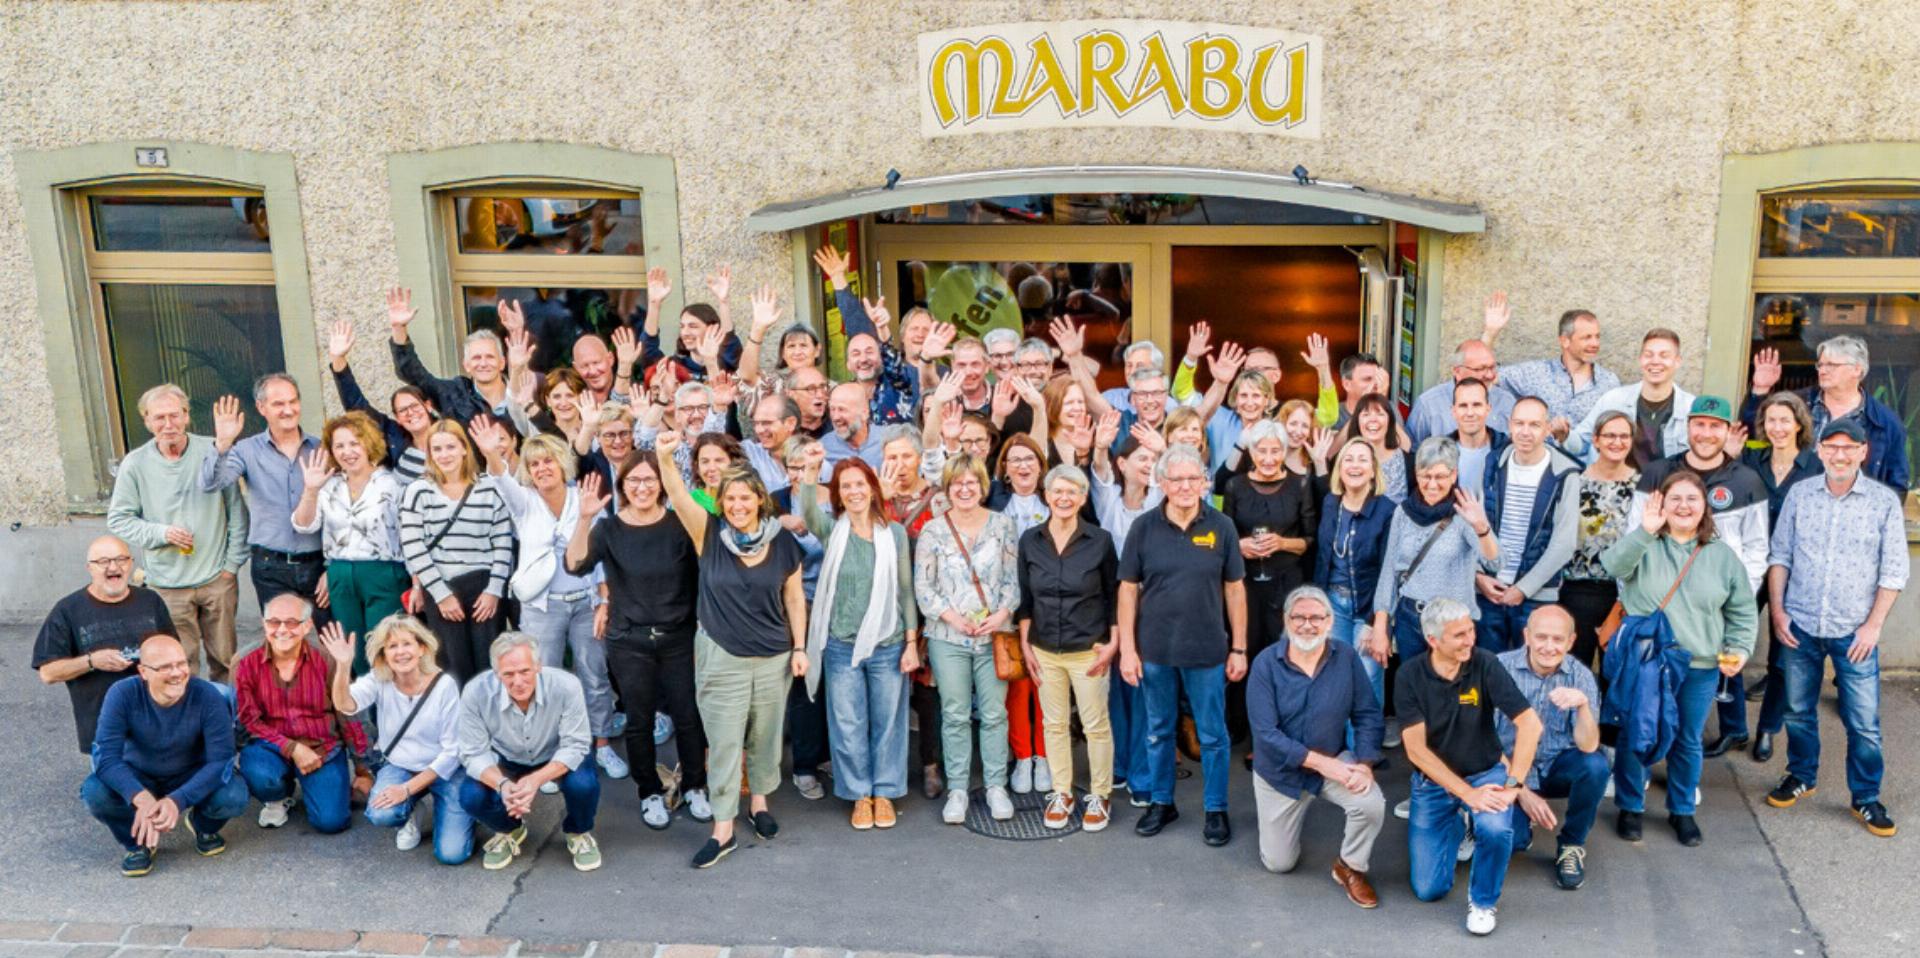 Das grosse Team der ehrenamtlichen Mitarbeiterinnen und Mitarbeiter des Marabus in Gelterkinden feiert seinen Erfolg. Bild zvg / snapshot.media